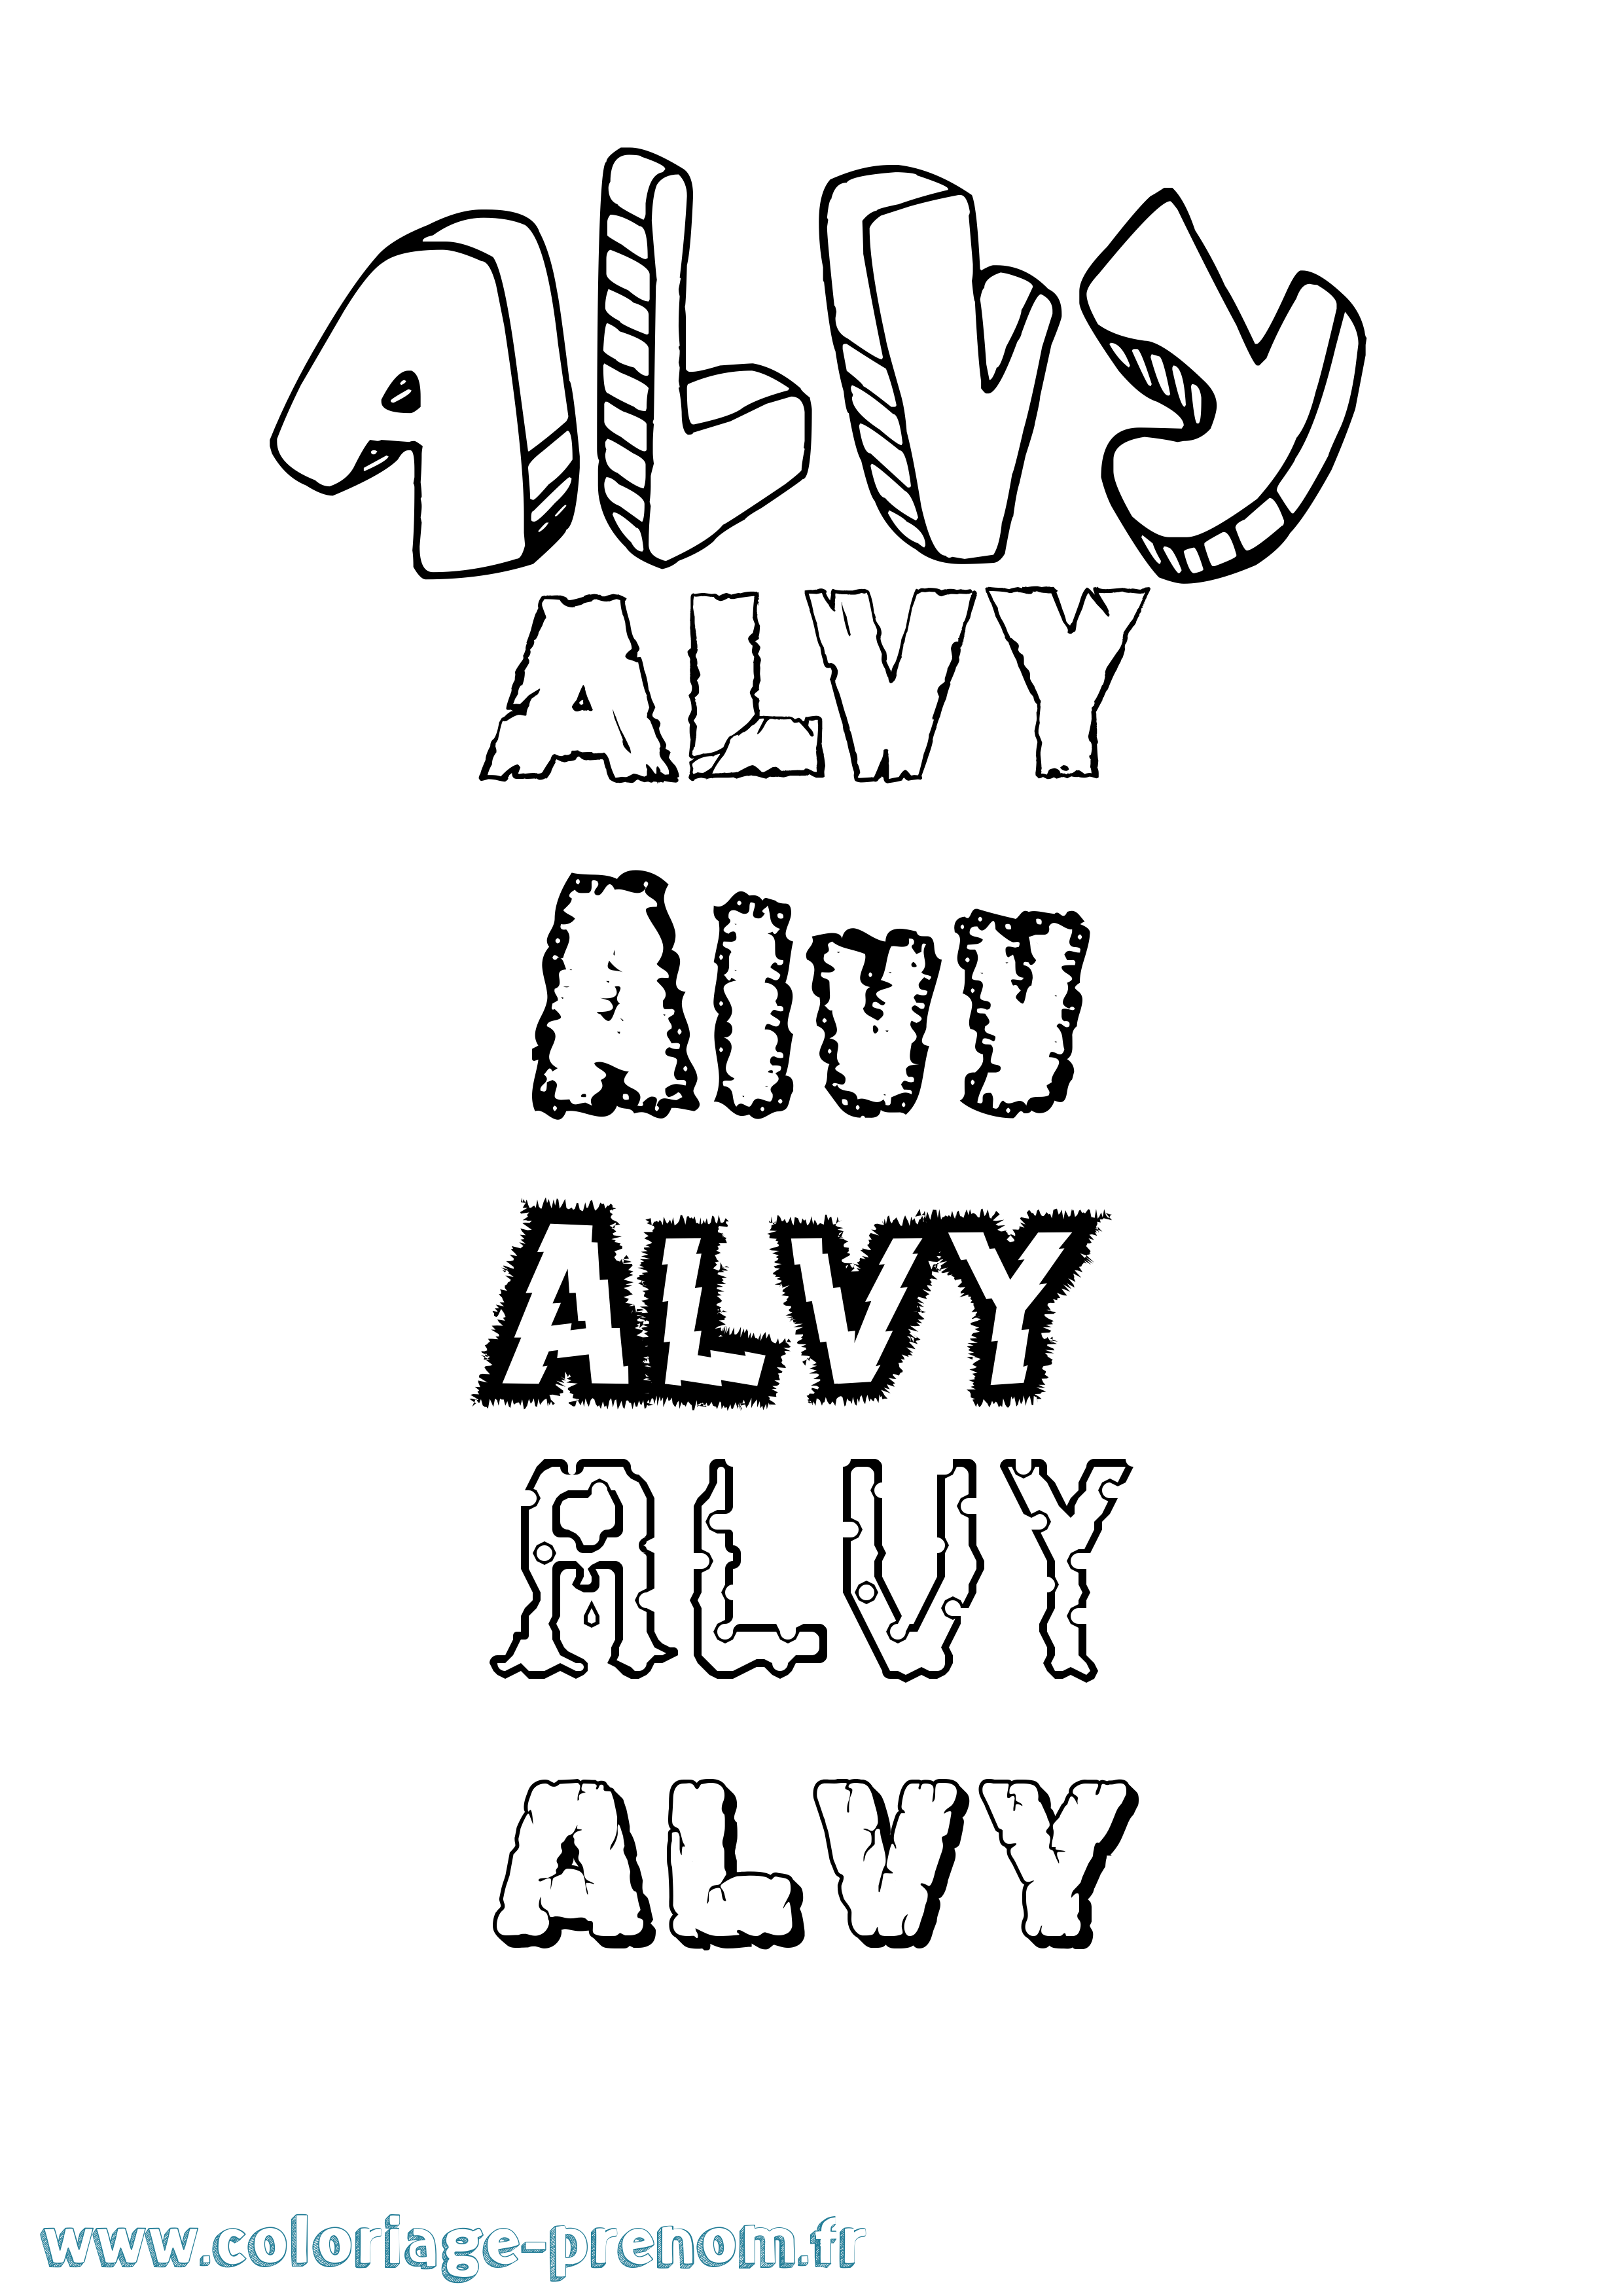 Coloriage prénom Alvy Destructuré